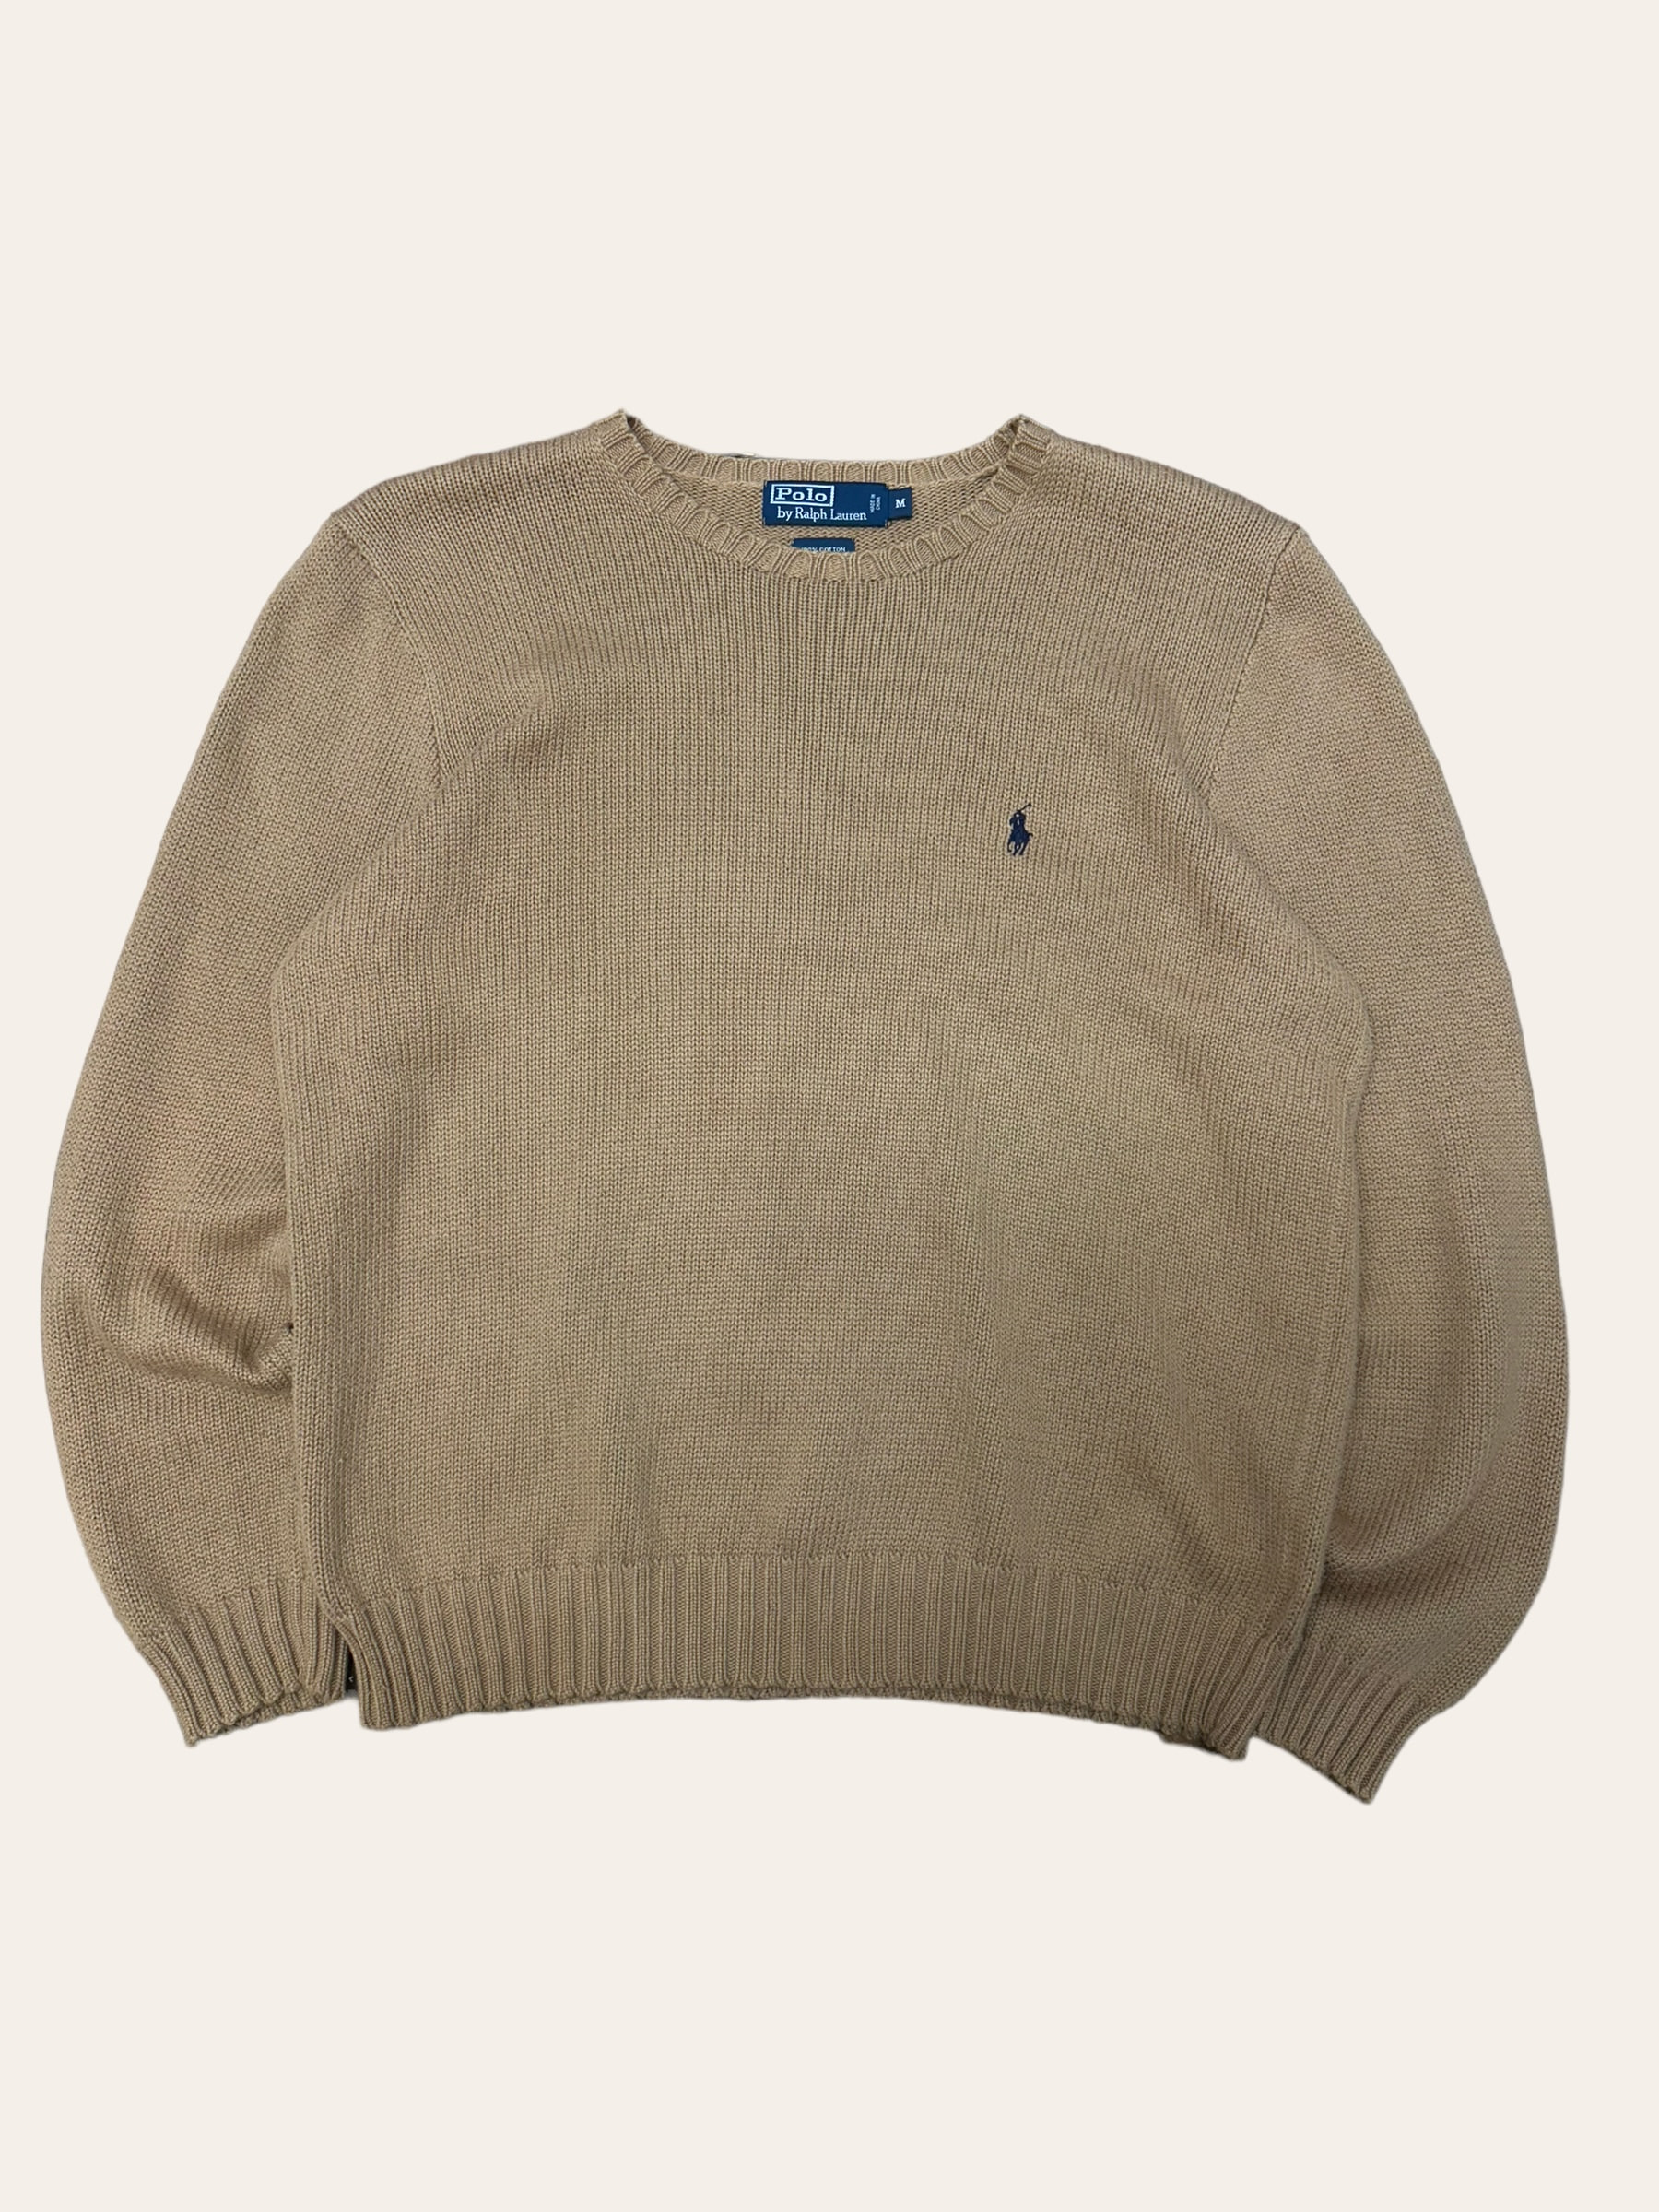 Polo ralph lauren camel color cotton crewneck sweater M